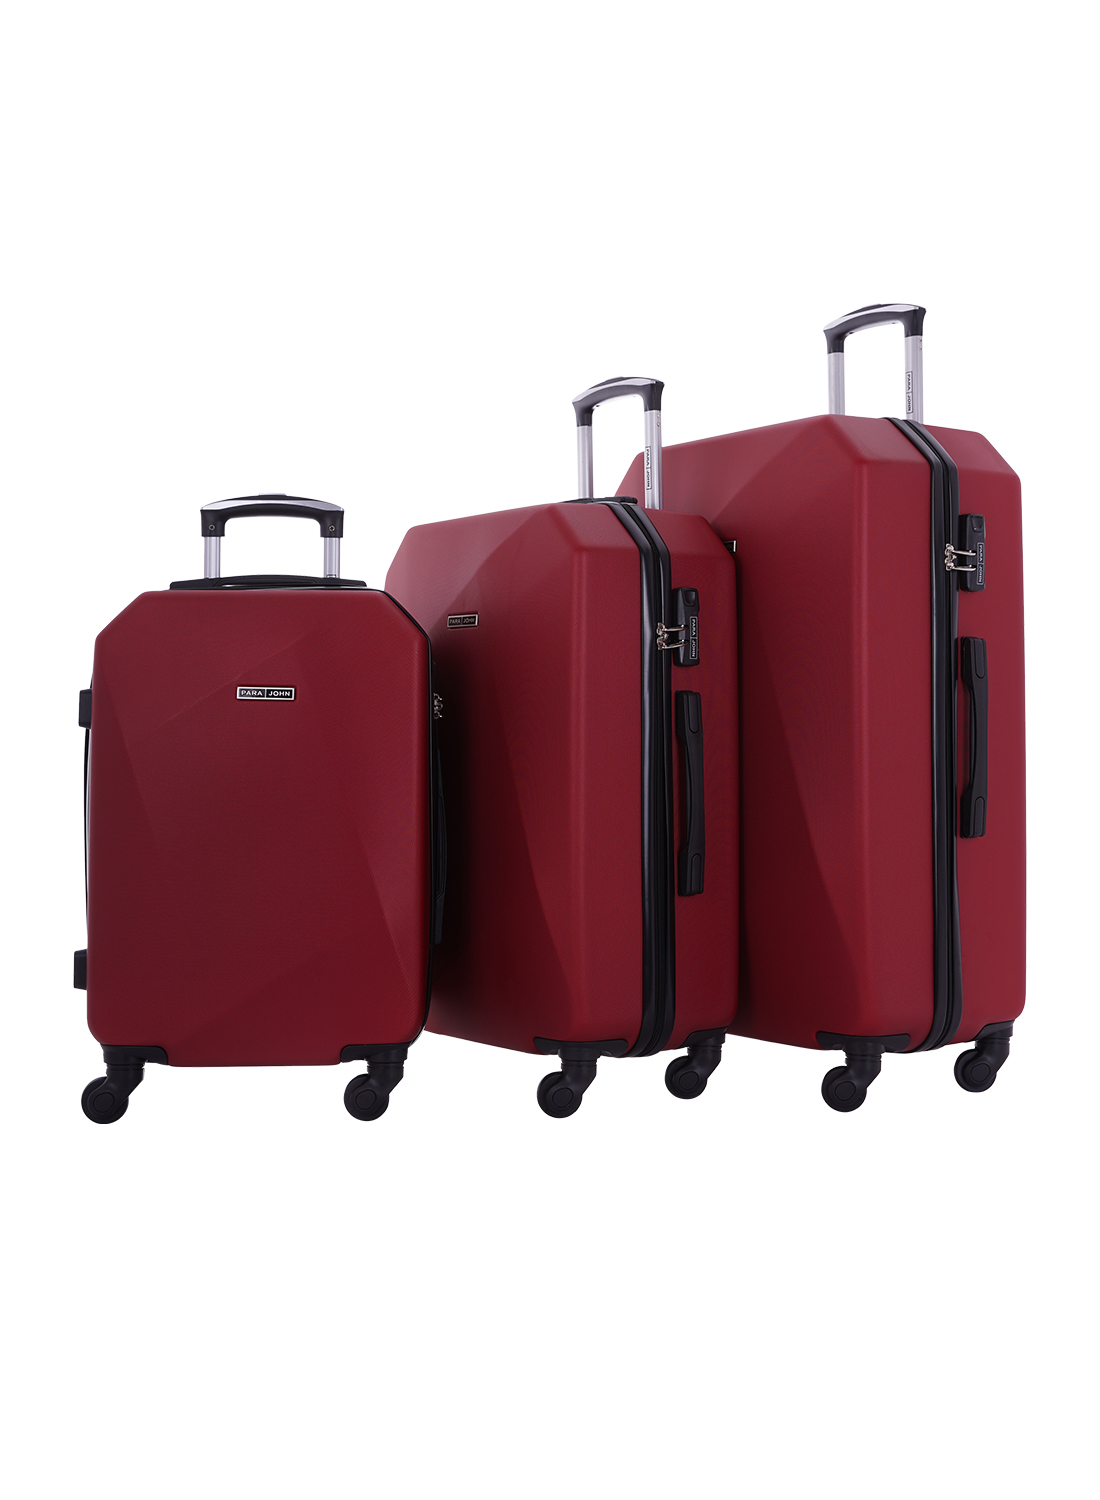 Burgundy Parajohn 3-Piece luggage Trolley in Qatar